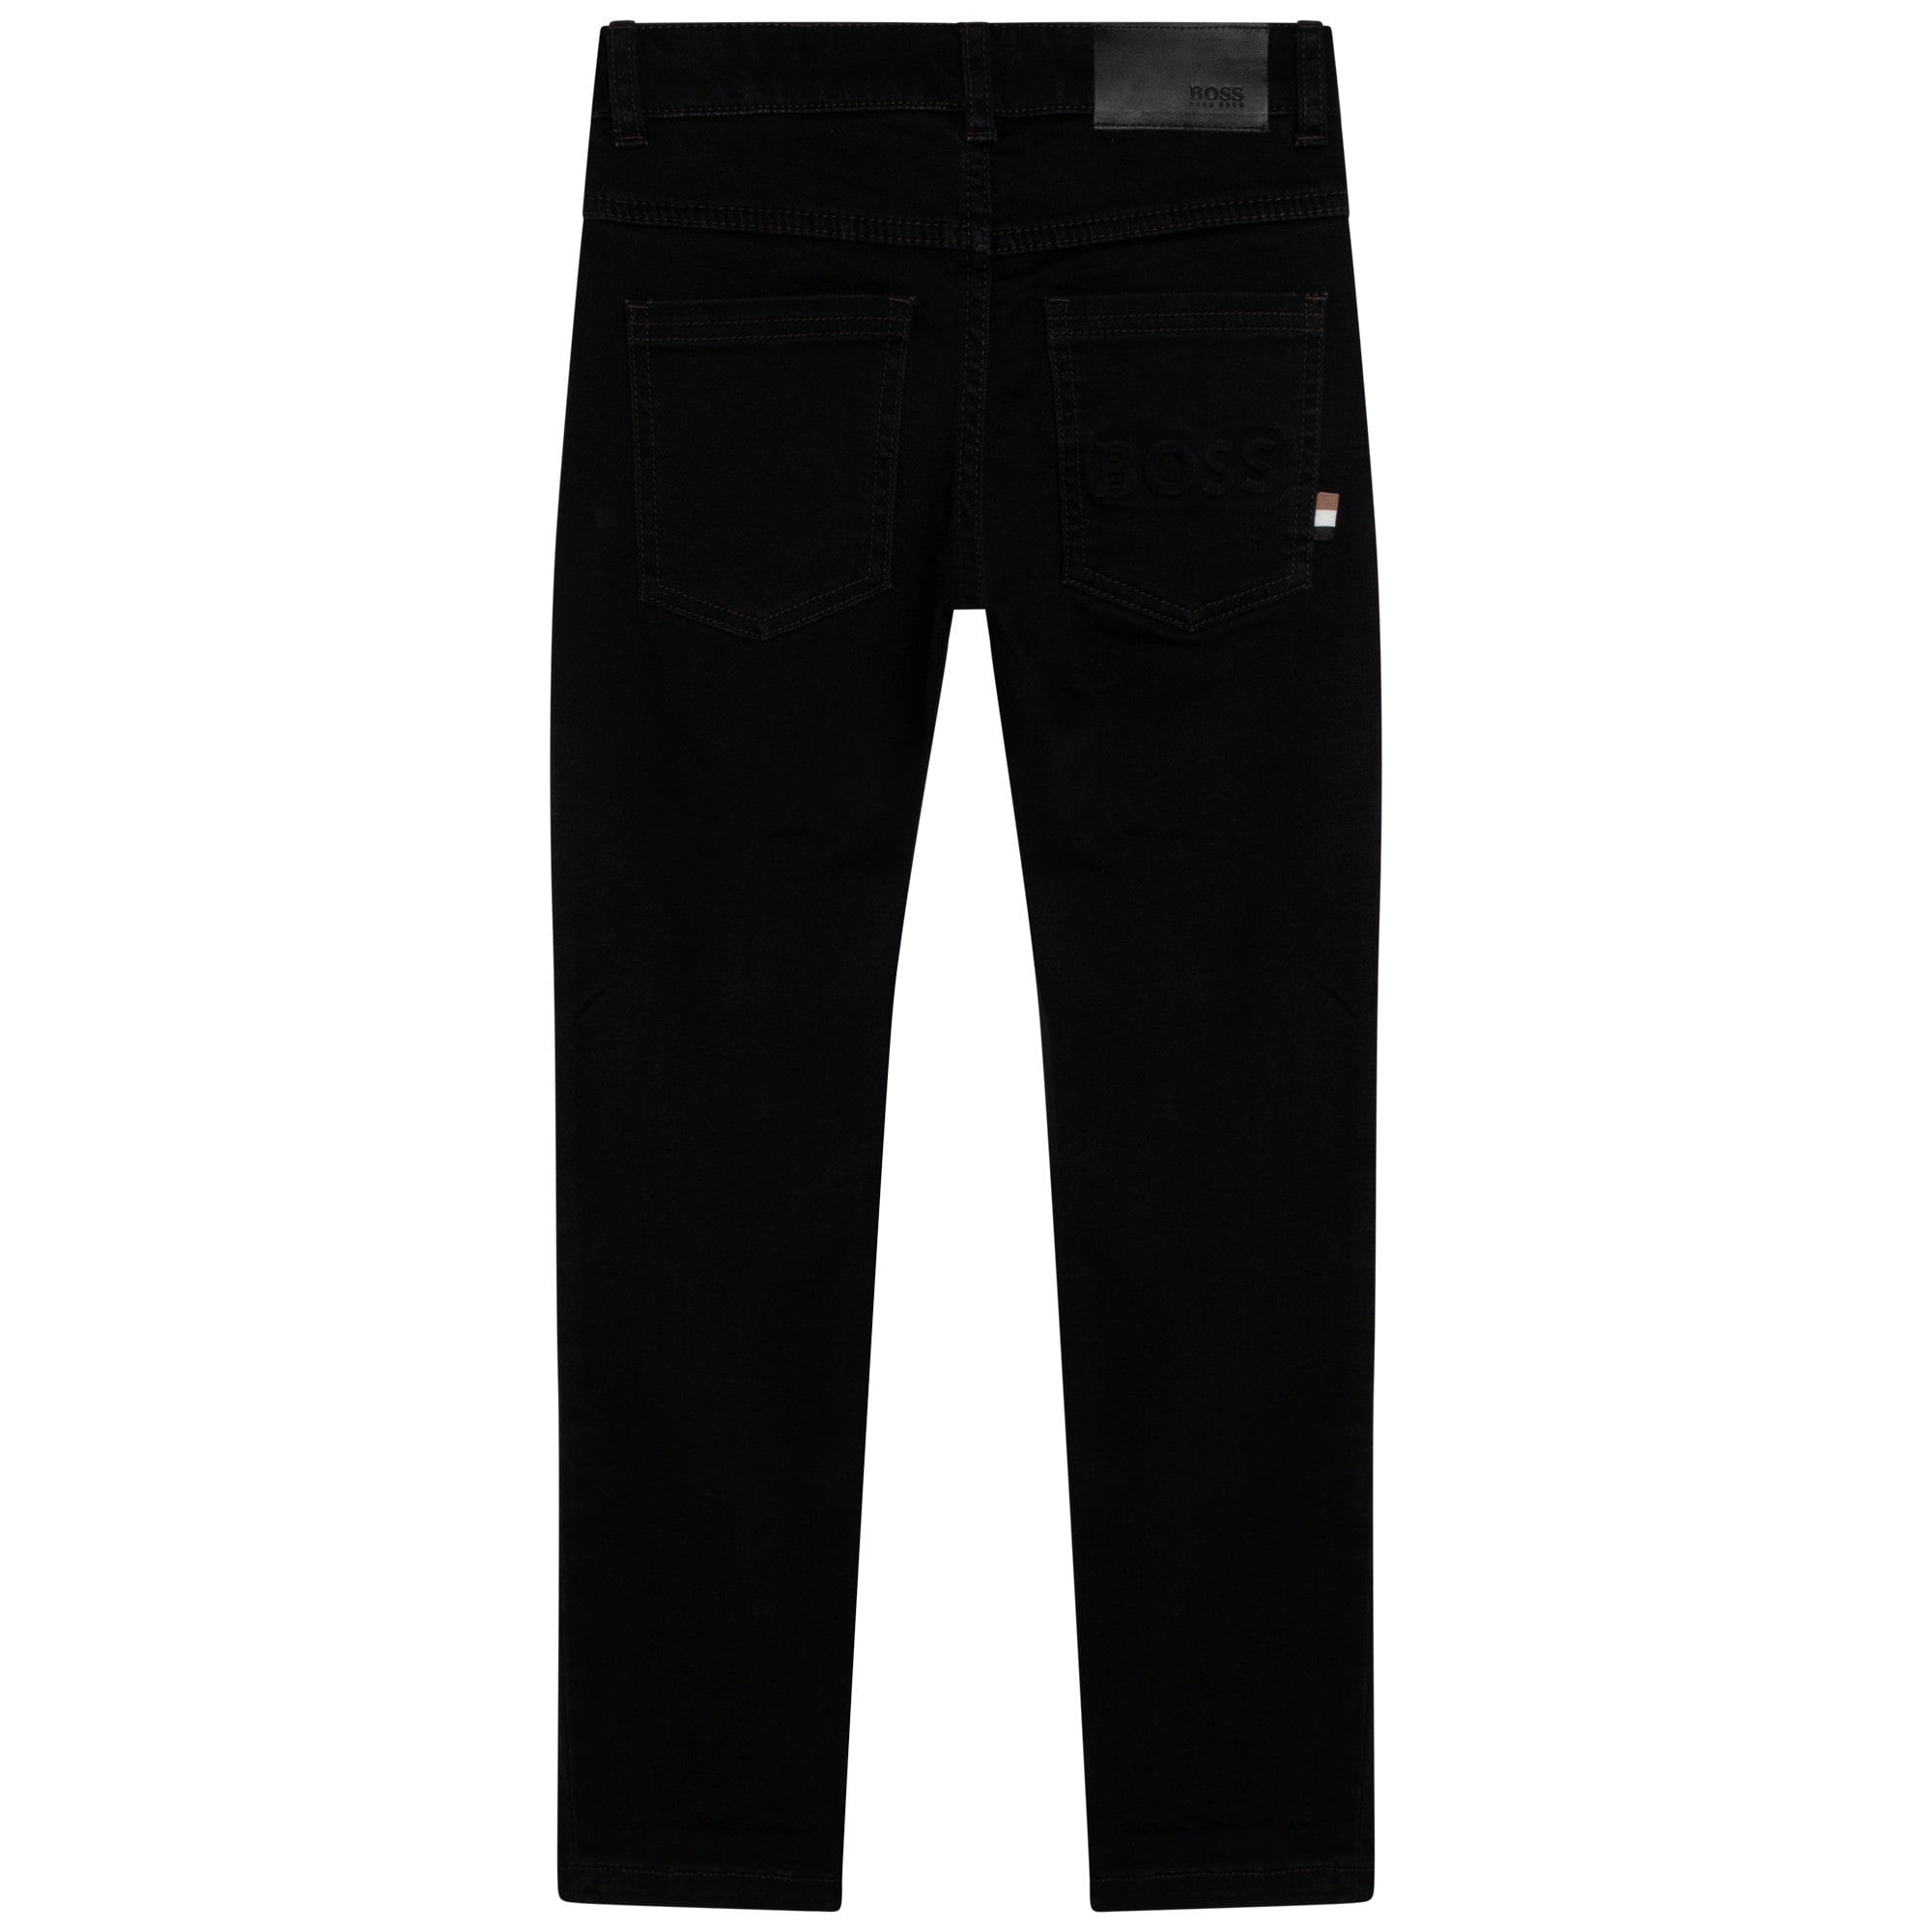 Fitted 5-Pocket Jean - Denim Black